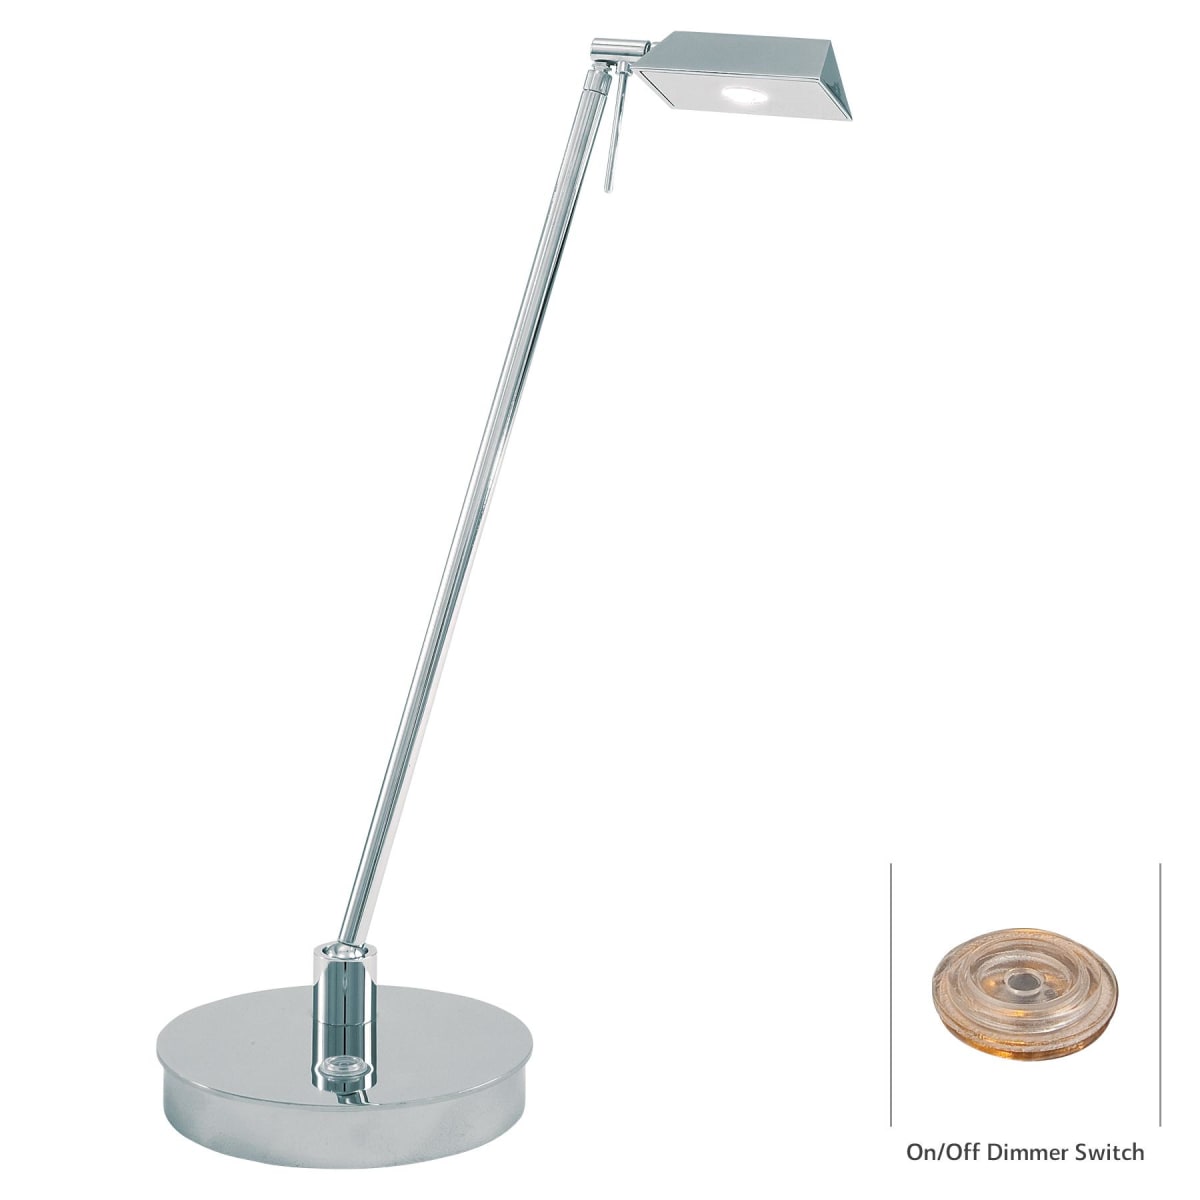 Kovacs P4316-077 Light LED Desk Lamp in Chrome from the